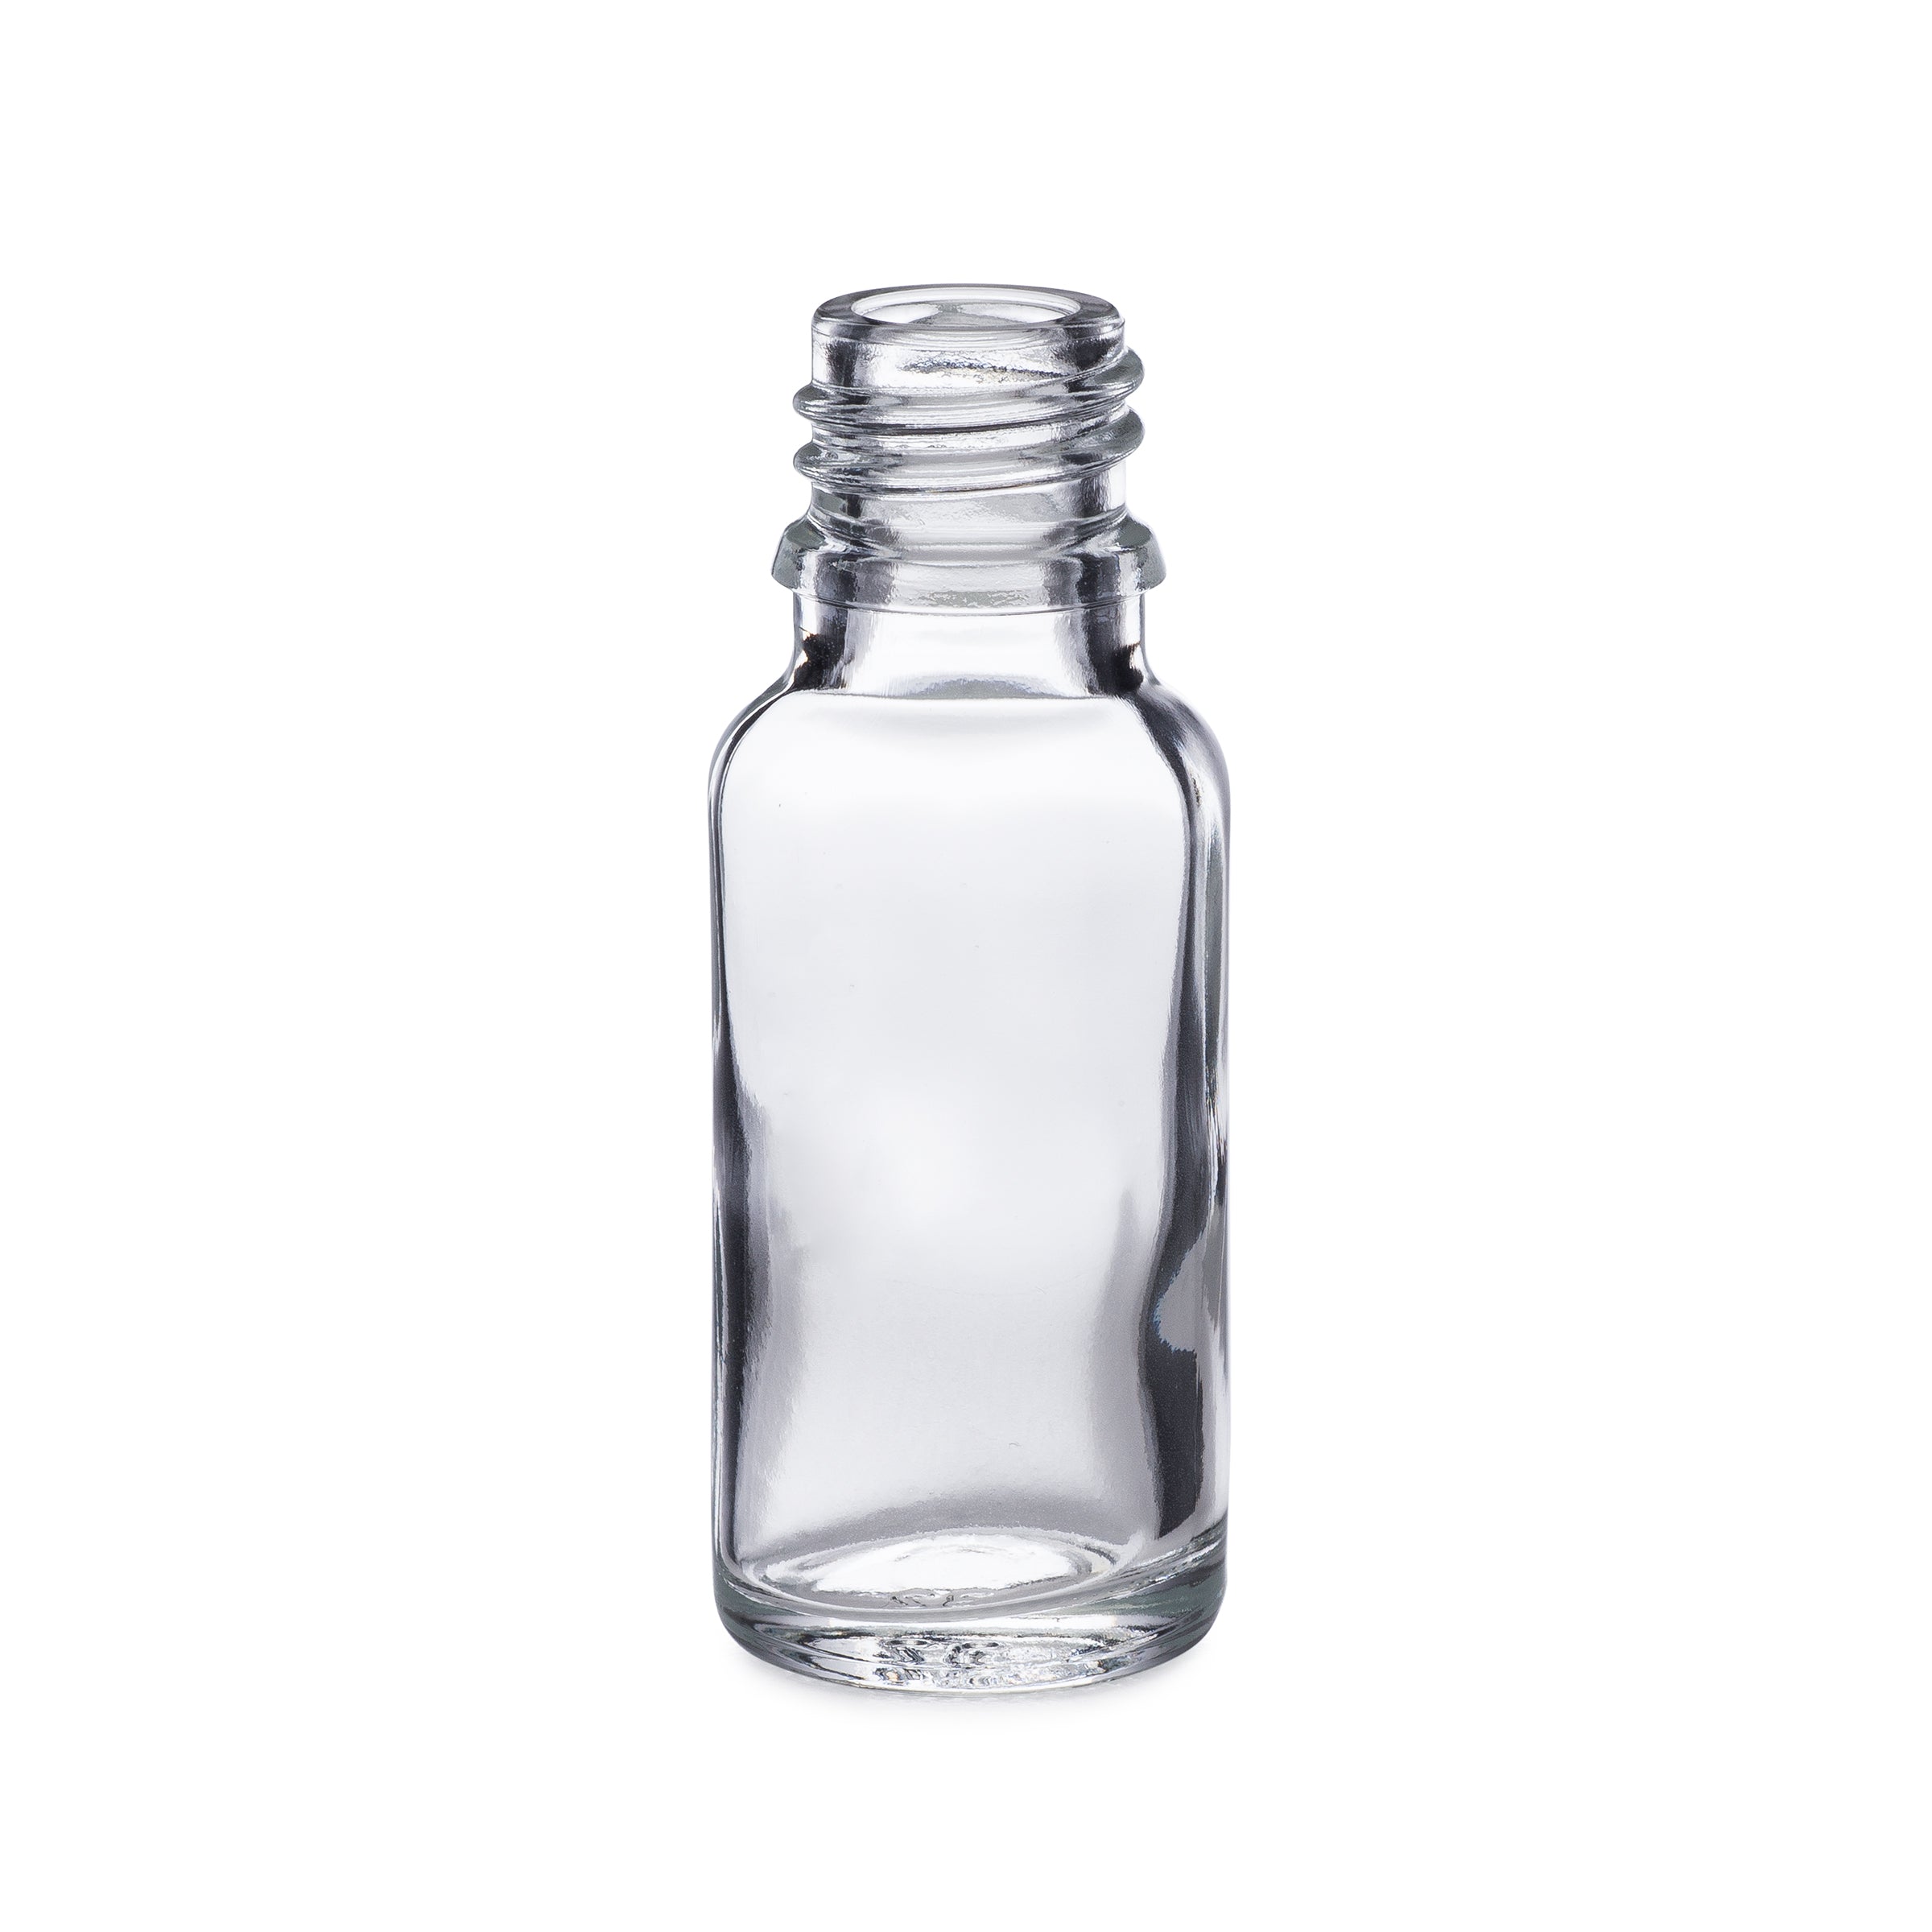 15ml/0.5oz Flint Dropper Bottle